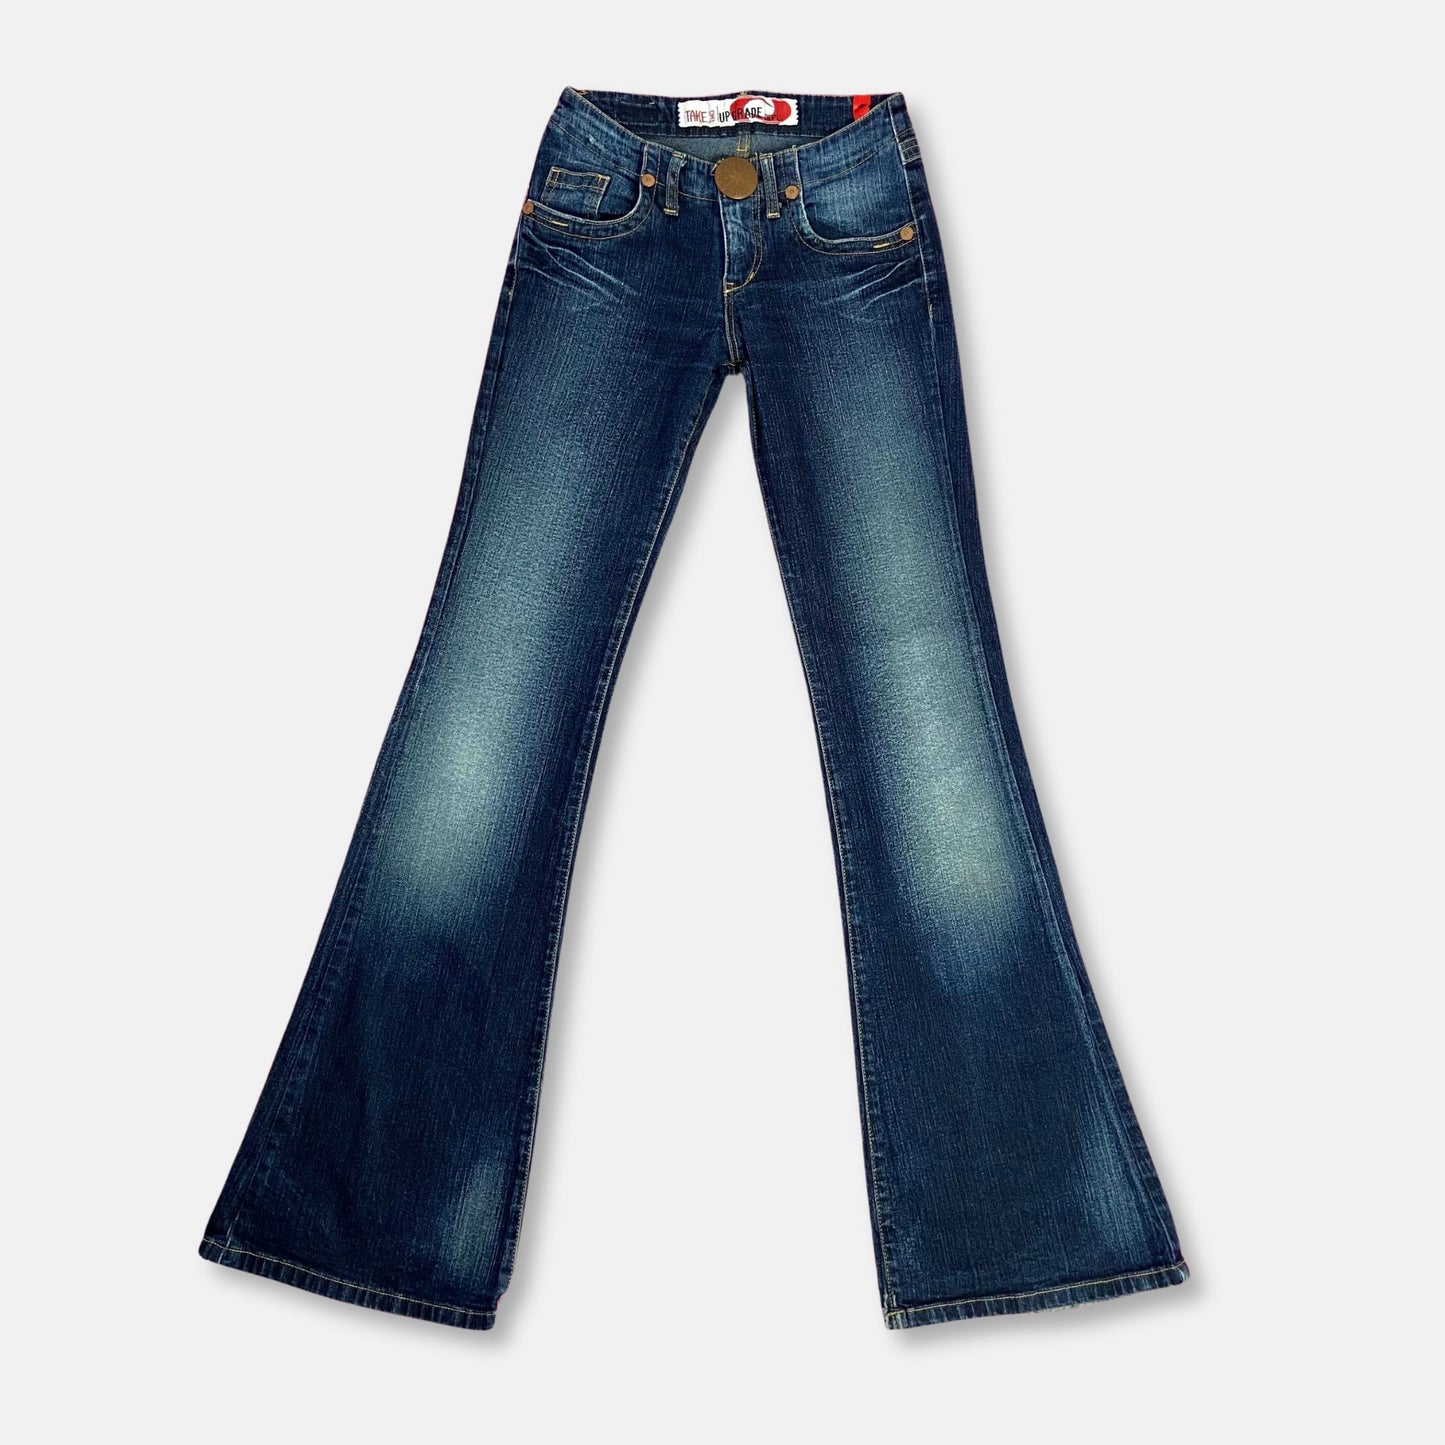 00s Low Rise Bootcut Jeans - Size XXS